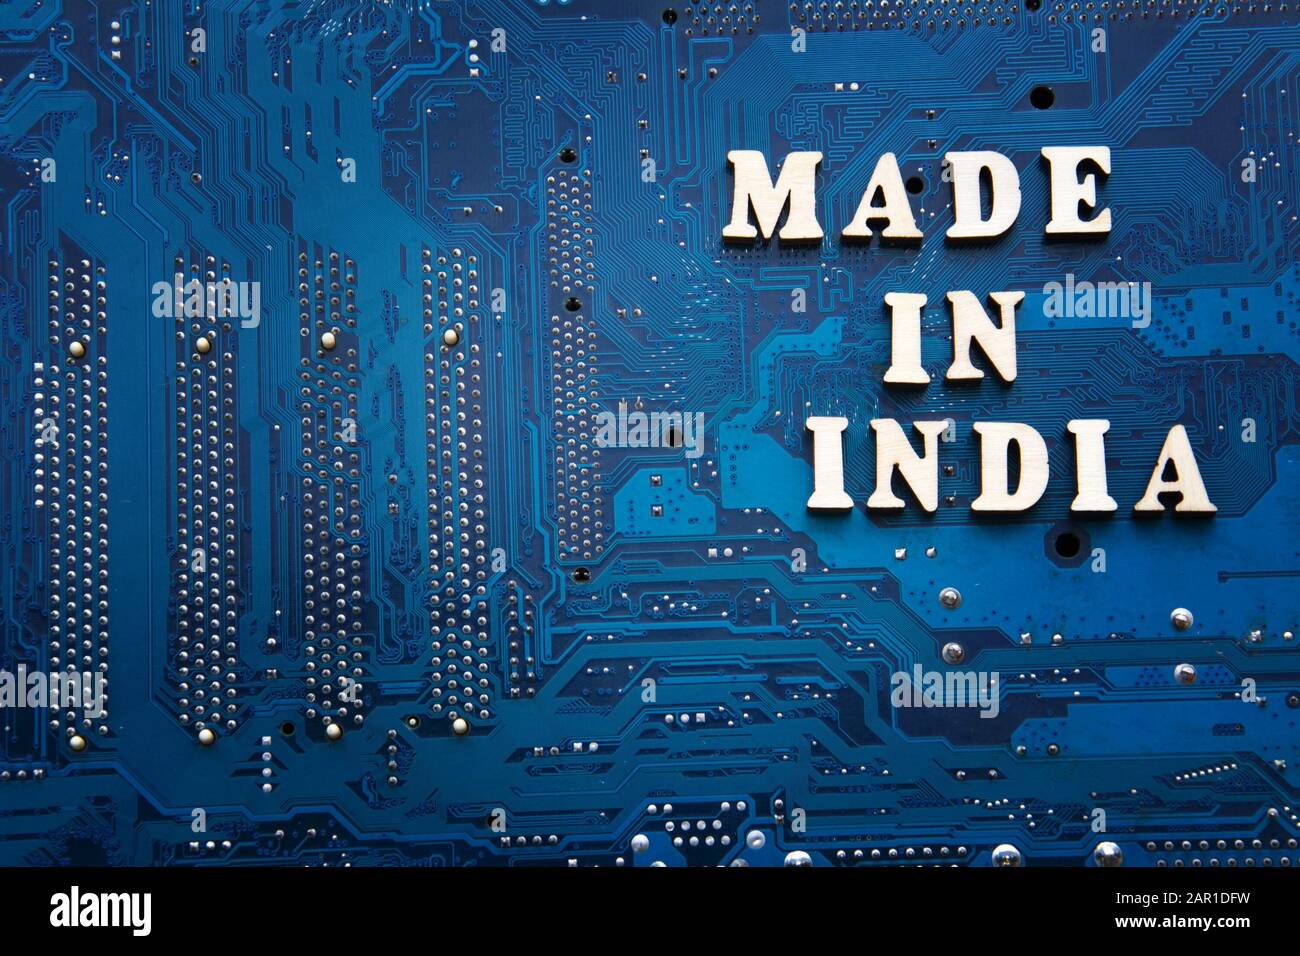 Beschriftung In Indien auf blauem Leiterplattenhintergrund. Copyspace für Design. Label made in India Electronics Manufacturing Concept Stockfoto